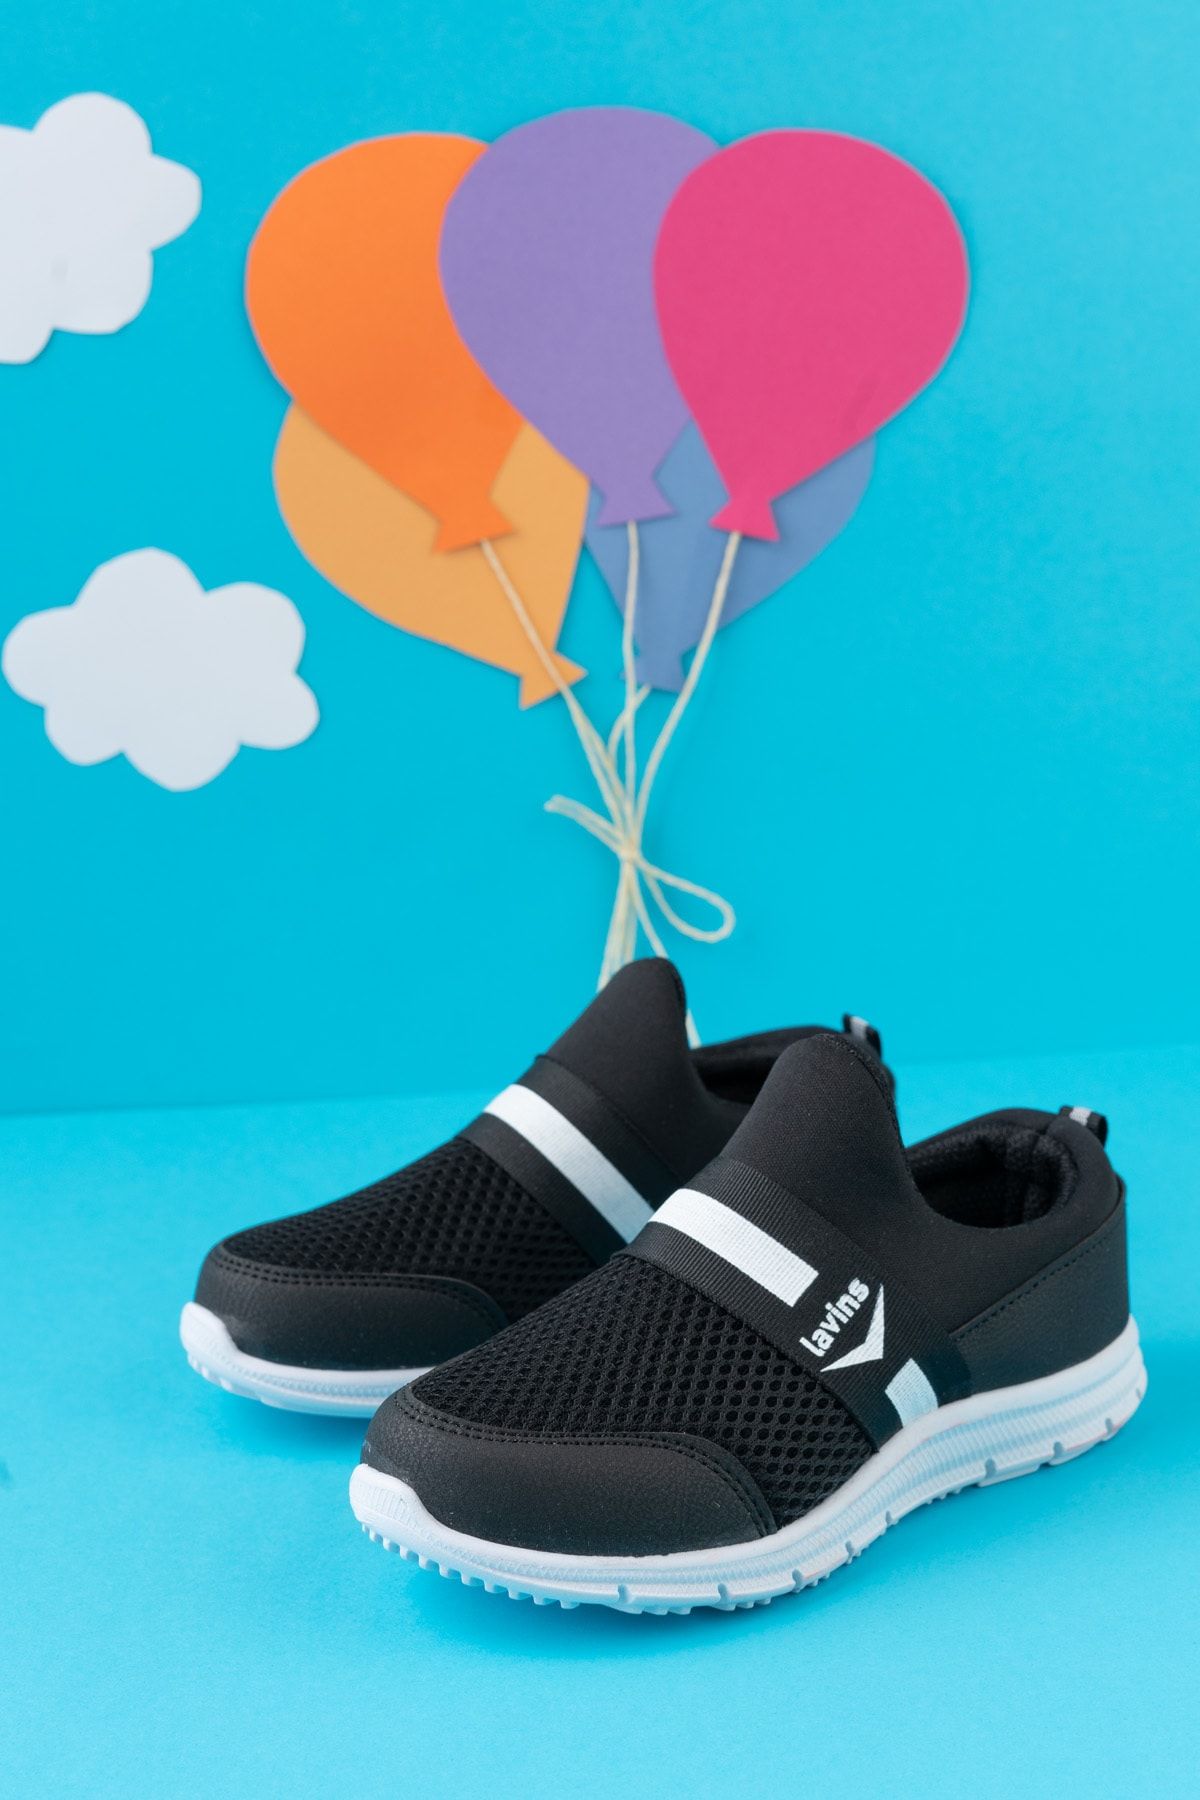 STOCON Garantili Unisex Çocuk Bağcıksız Rahat Esnek Günlük Sneaker Spor Ayakkabı 3003